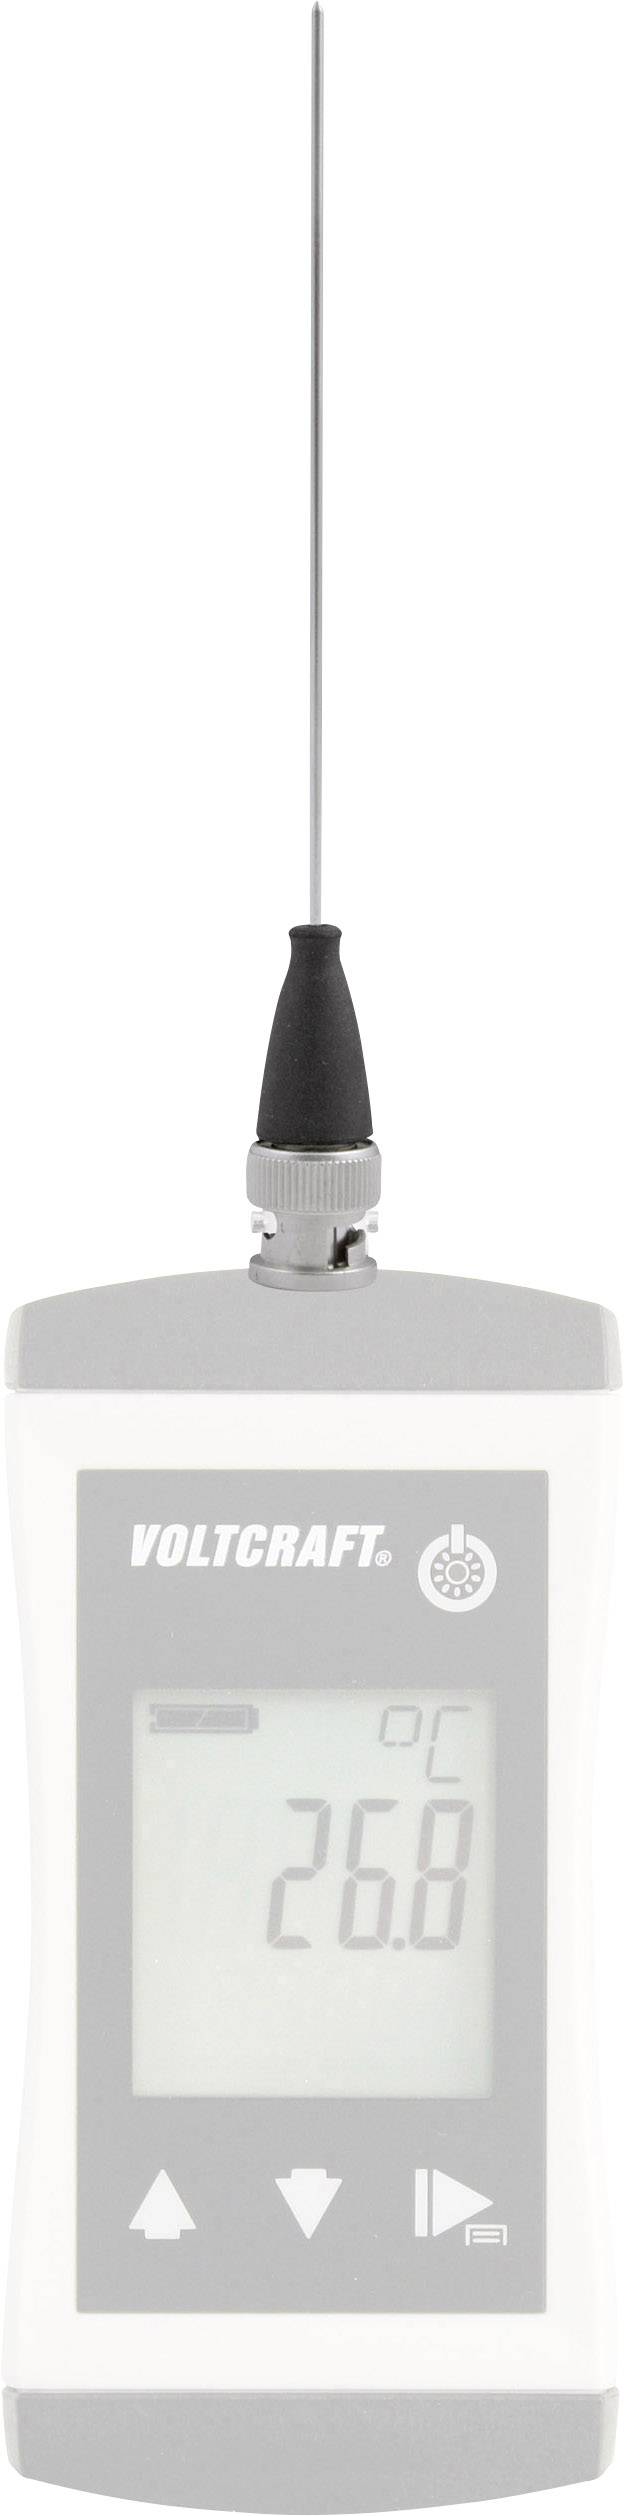 VOLTCRAFT TPT-207 Einstechfühler -70 bis 250 °C Fühler-Typ Pt1000